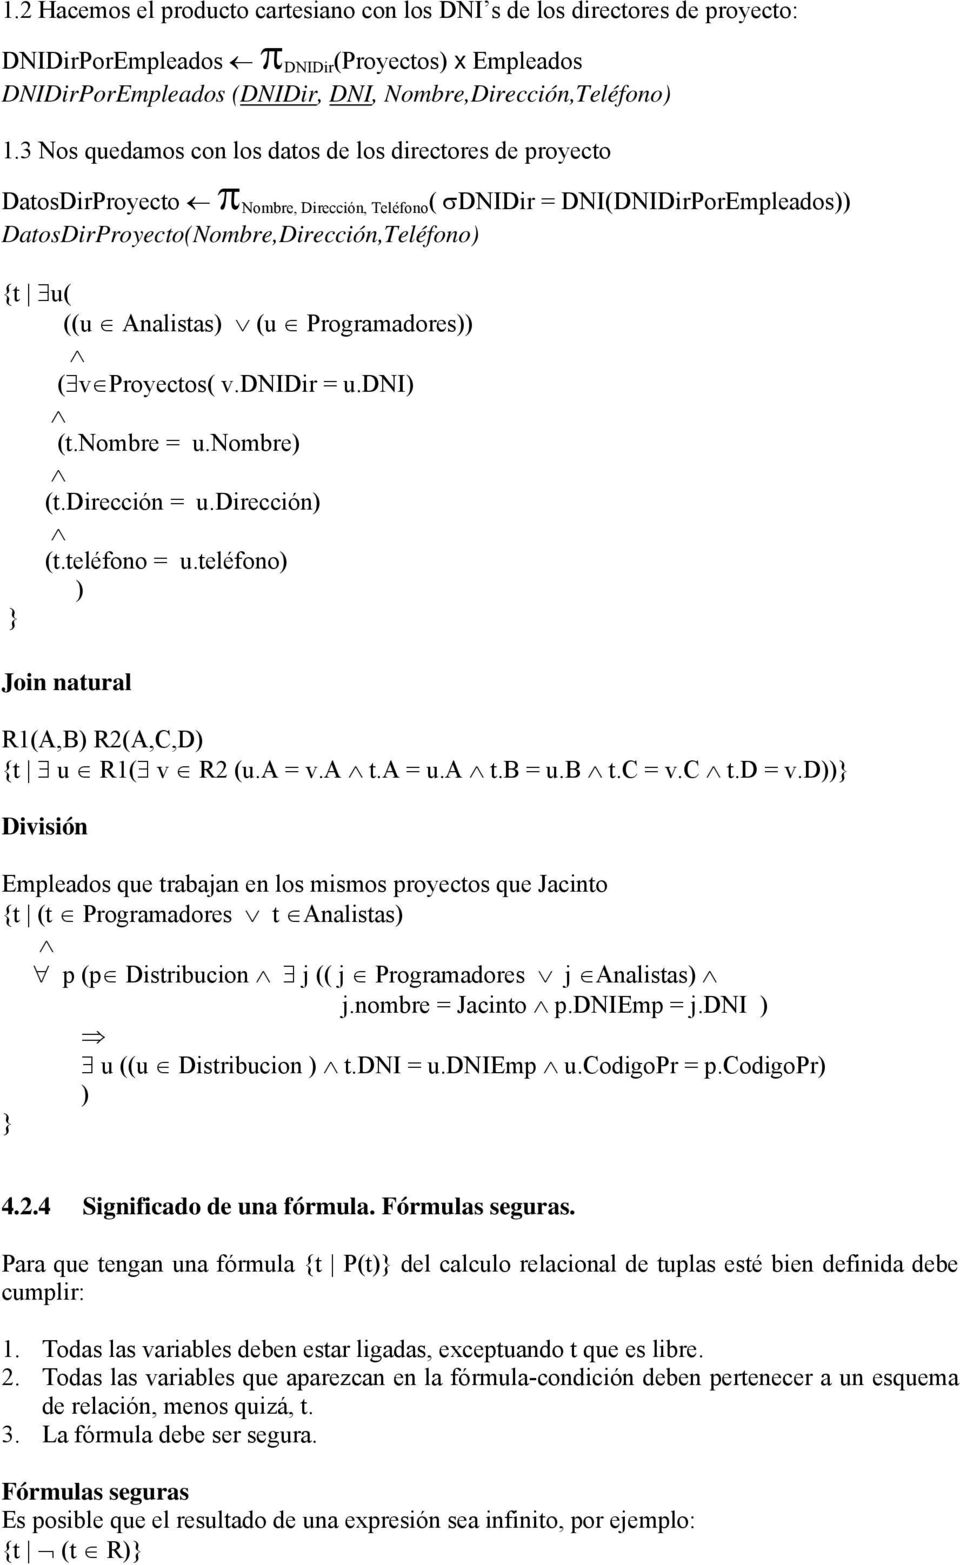 Analistas) (u Programadores)) ( v Proyectos( v.dnidir = u.dni) (t.nombre = u.nombre) (t.dirección = u.dirección) (t.teléfono = u.teléfono) ) } Join natural R1(A,B) R2(A,C,D) {t u R1( v R2 (u.a = v.